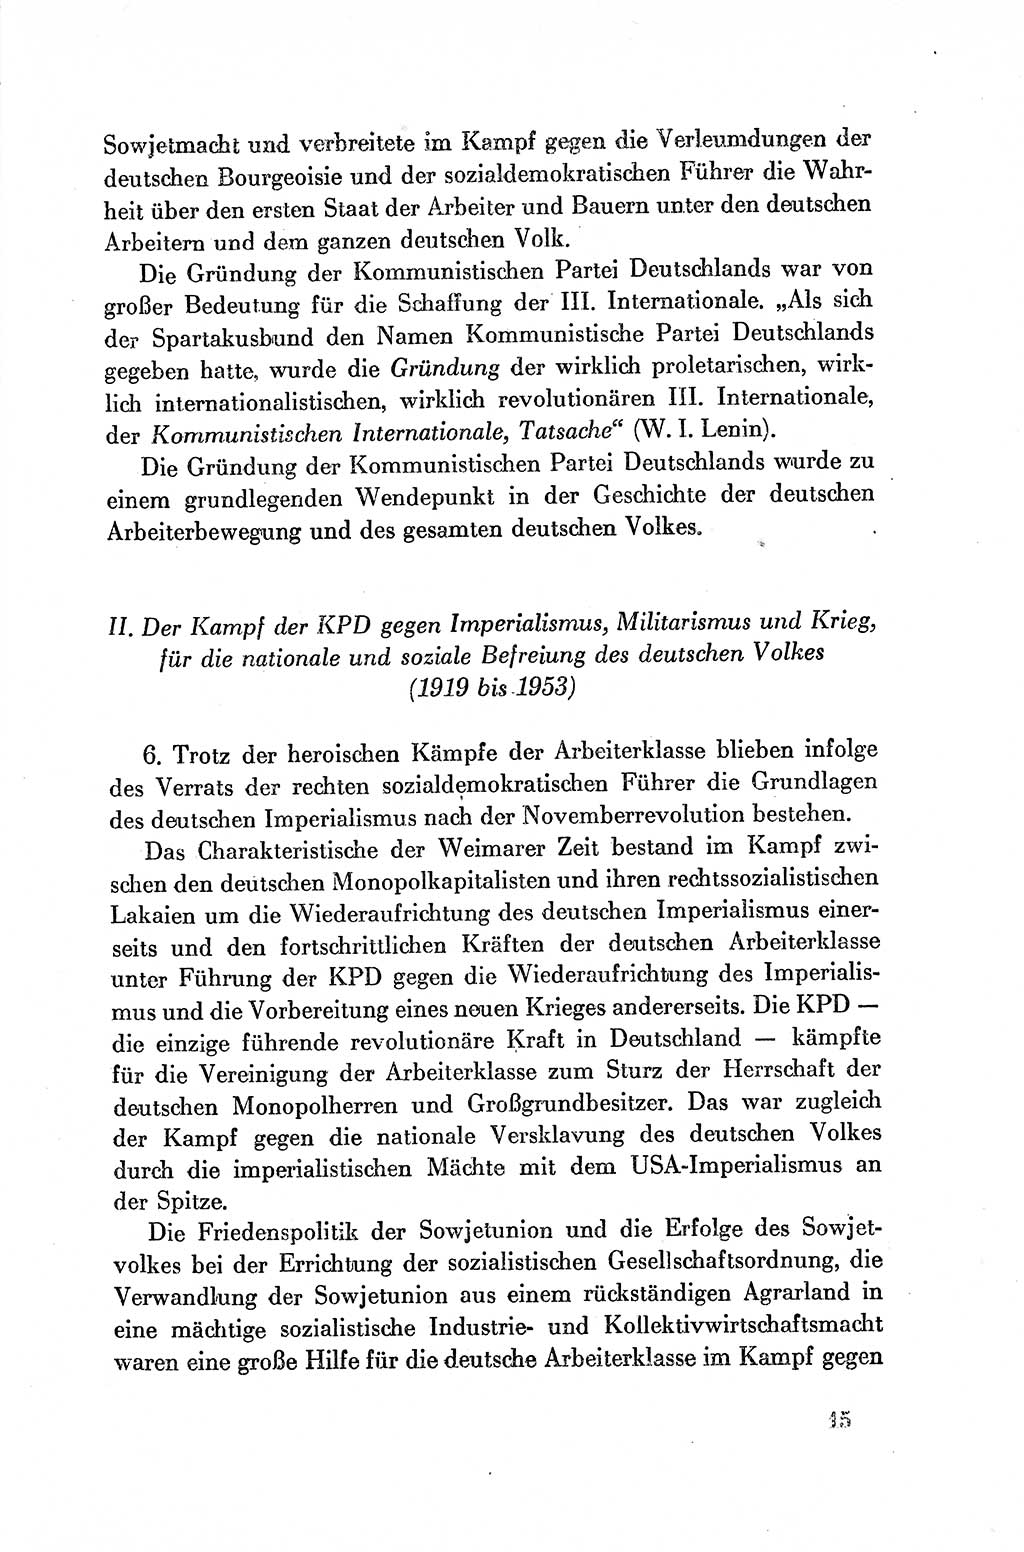 Dokumente der Sozialistischen Einheitspartei Deutschlands (SED) [Deutsche Demokratische Republik (DDR)] 1954-1955, Seite 15 (Dok. SED DDR 1954-1955, S. 15)